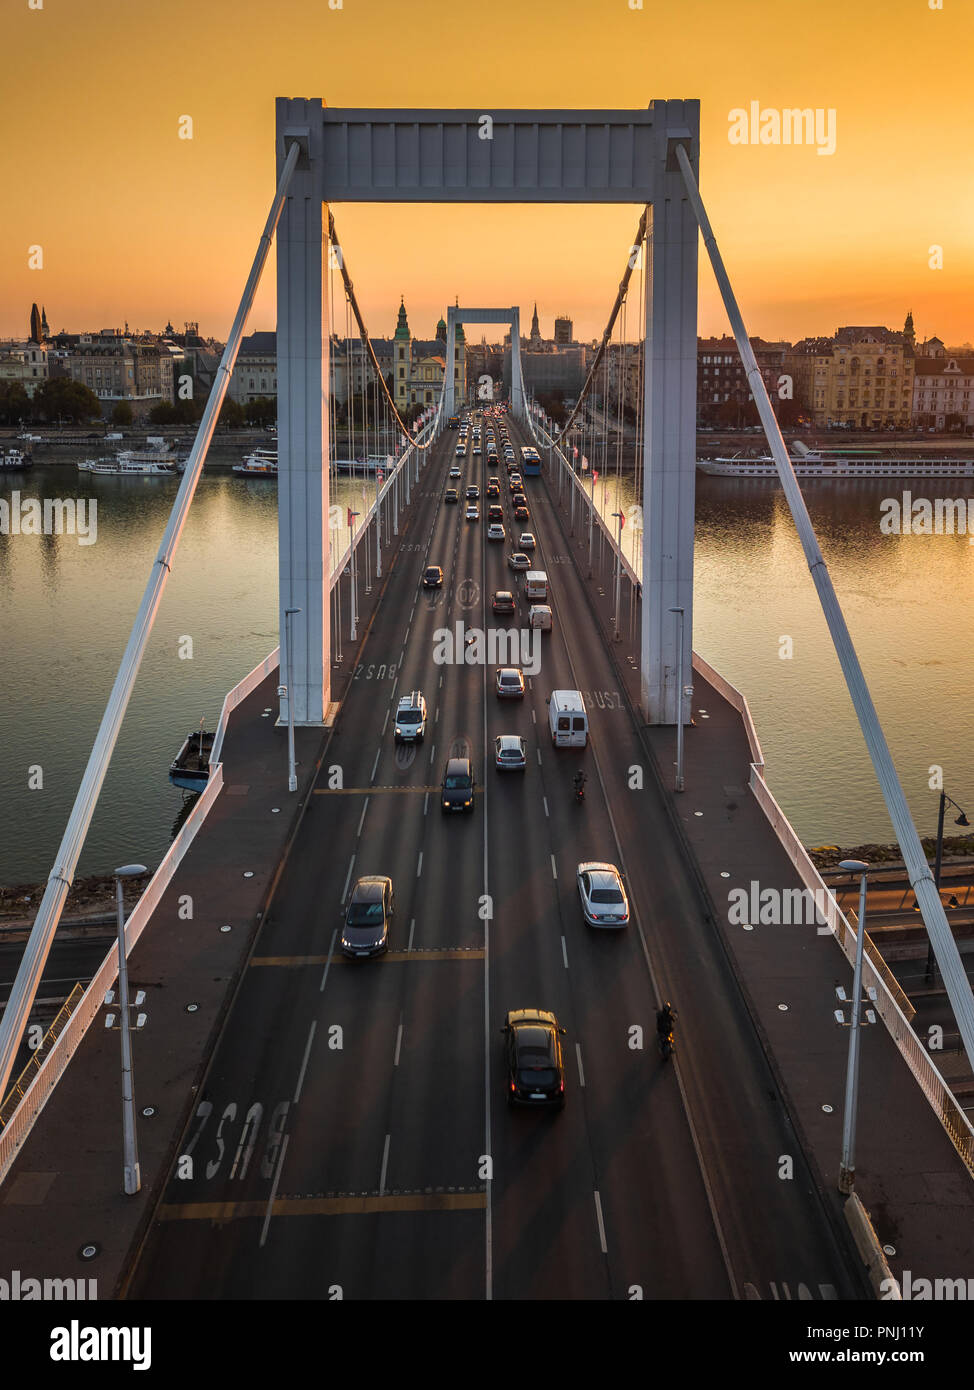 Budapest, Hungary - Beautiful Elisabeth Bridge (Erzsebet hid) at sunrise with golden sky and heavy morning traffic Stock Photo